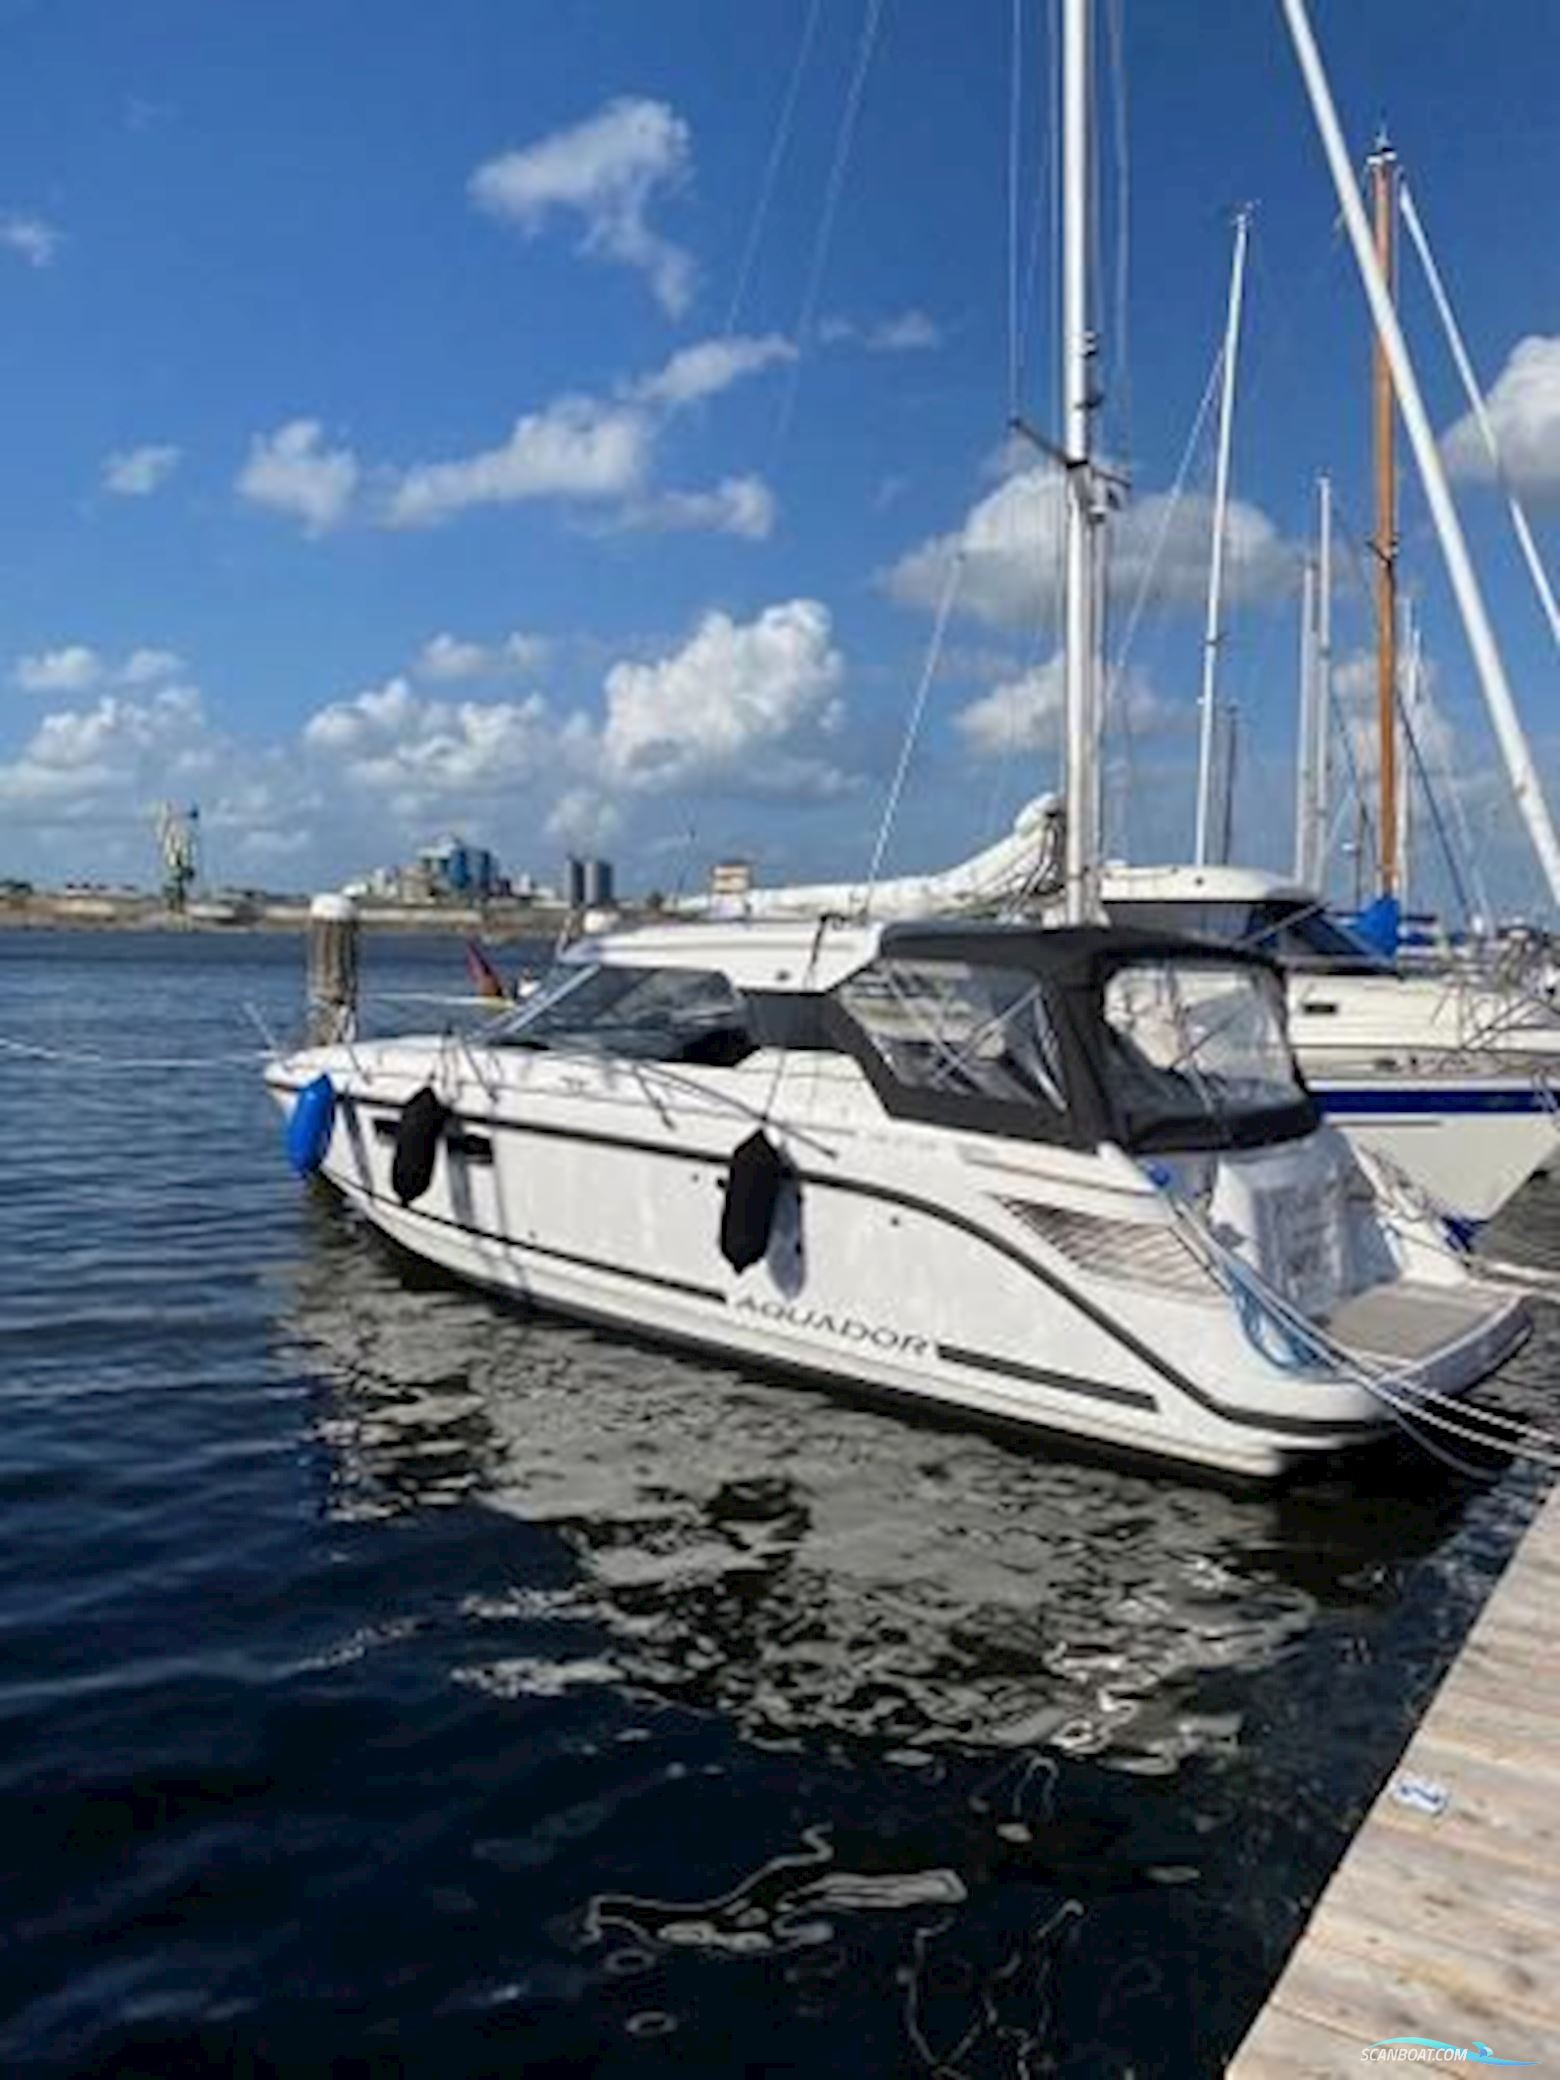 Aquador 27 HT Motorbåt 2018, med Mercruiser motor, Tyskland